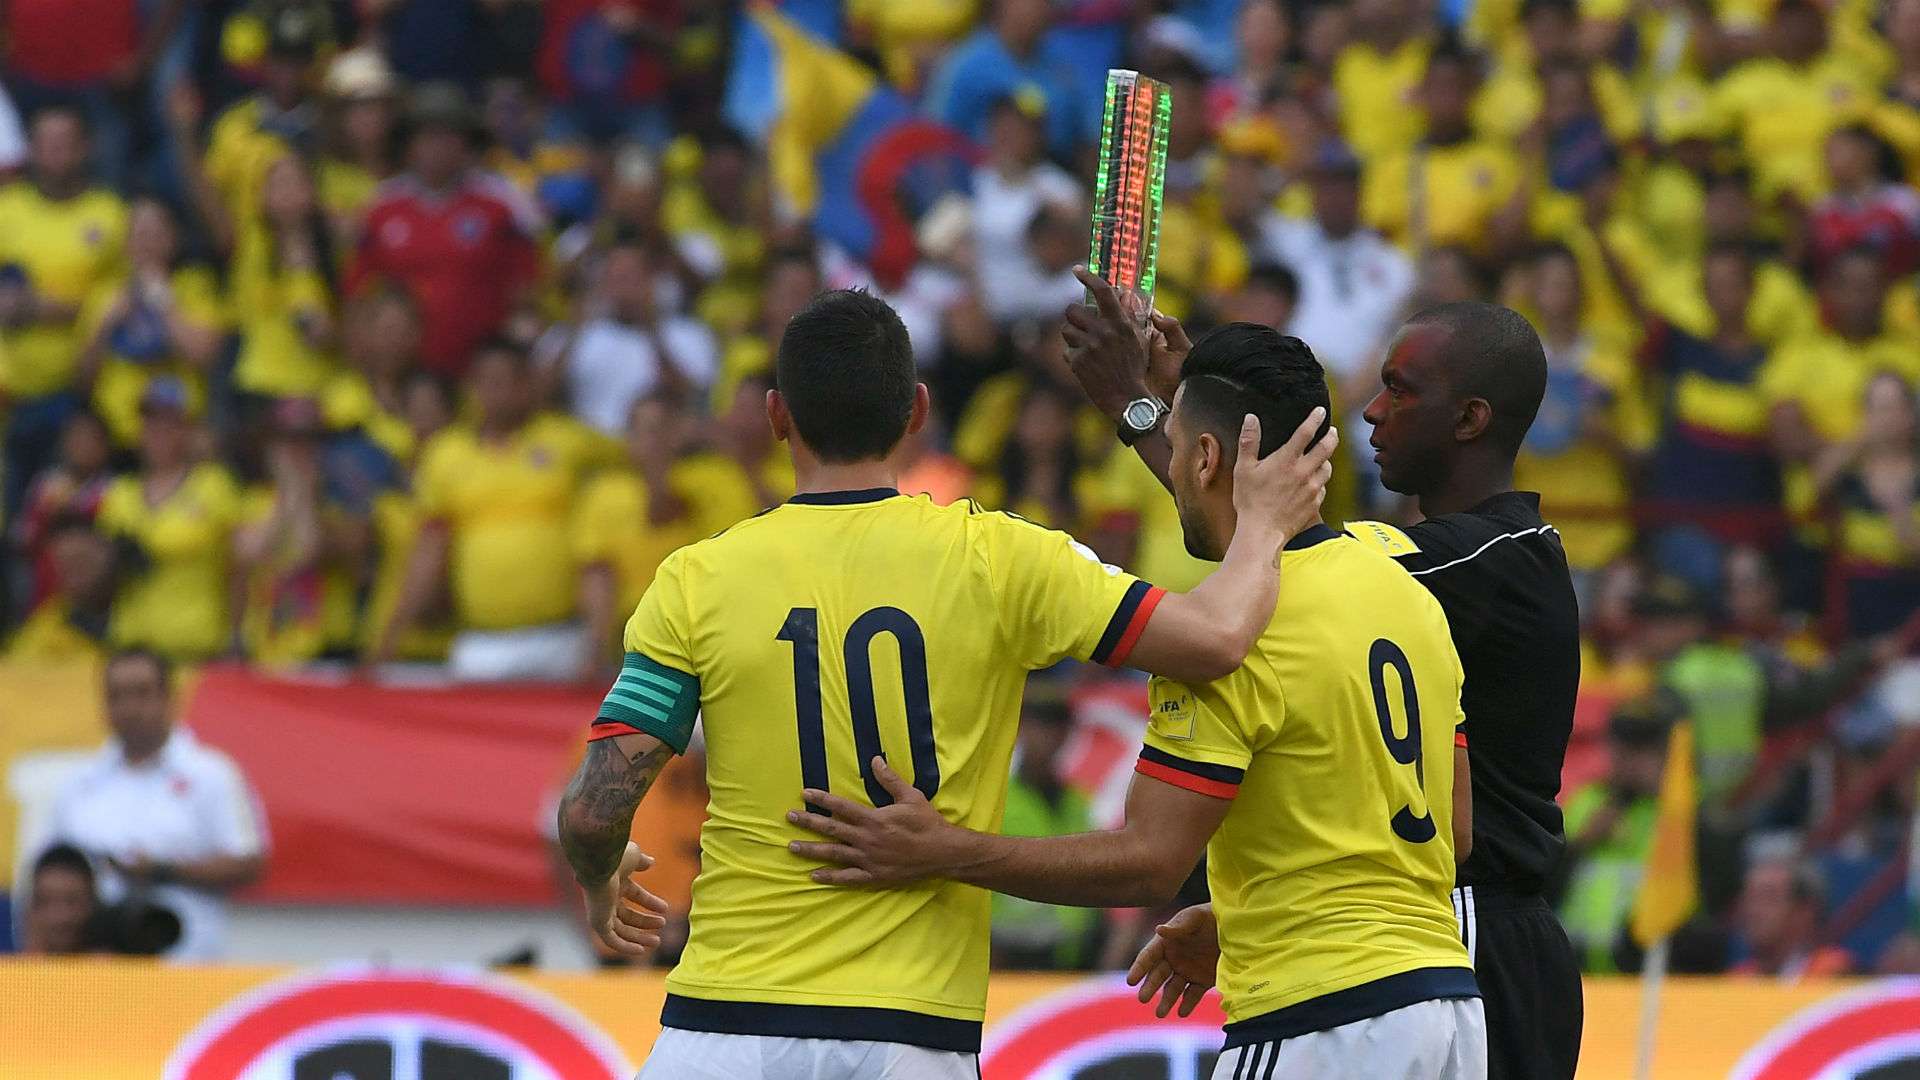 Abrazo falcao y James Colombia vs Chile Eliminatoria 10112016